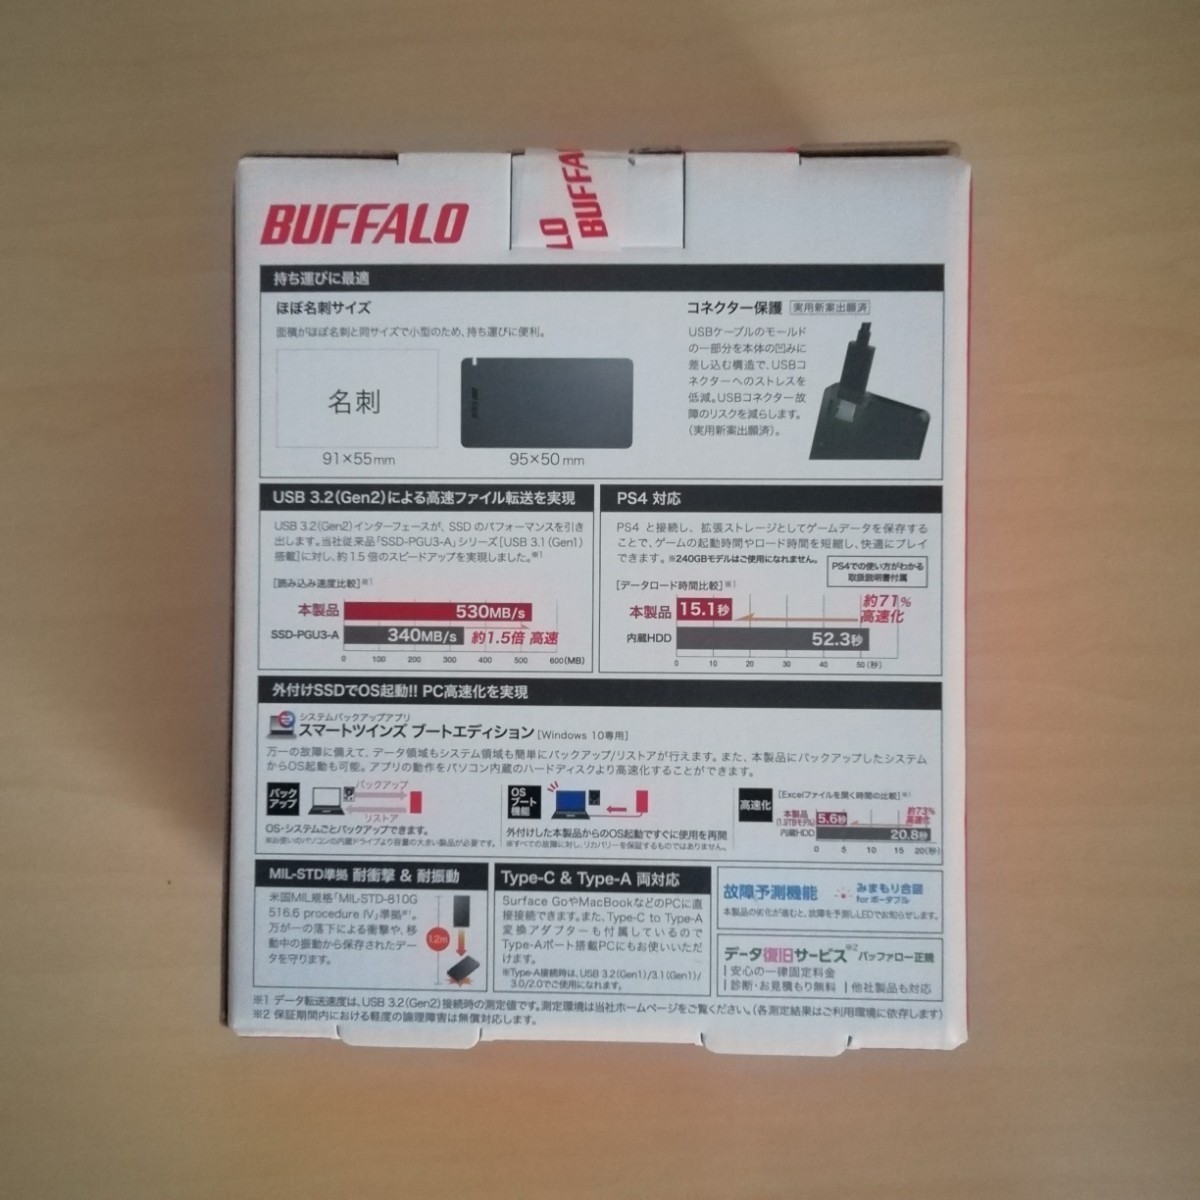 新品 BUFFALO 外付 SSD 480GB SSD-PGM480U3-B/N